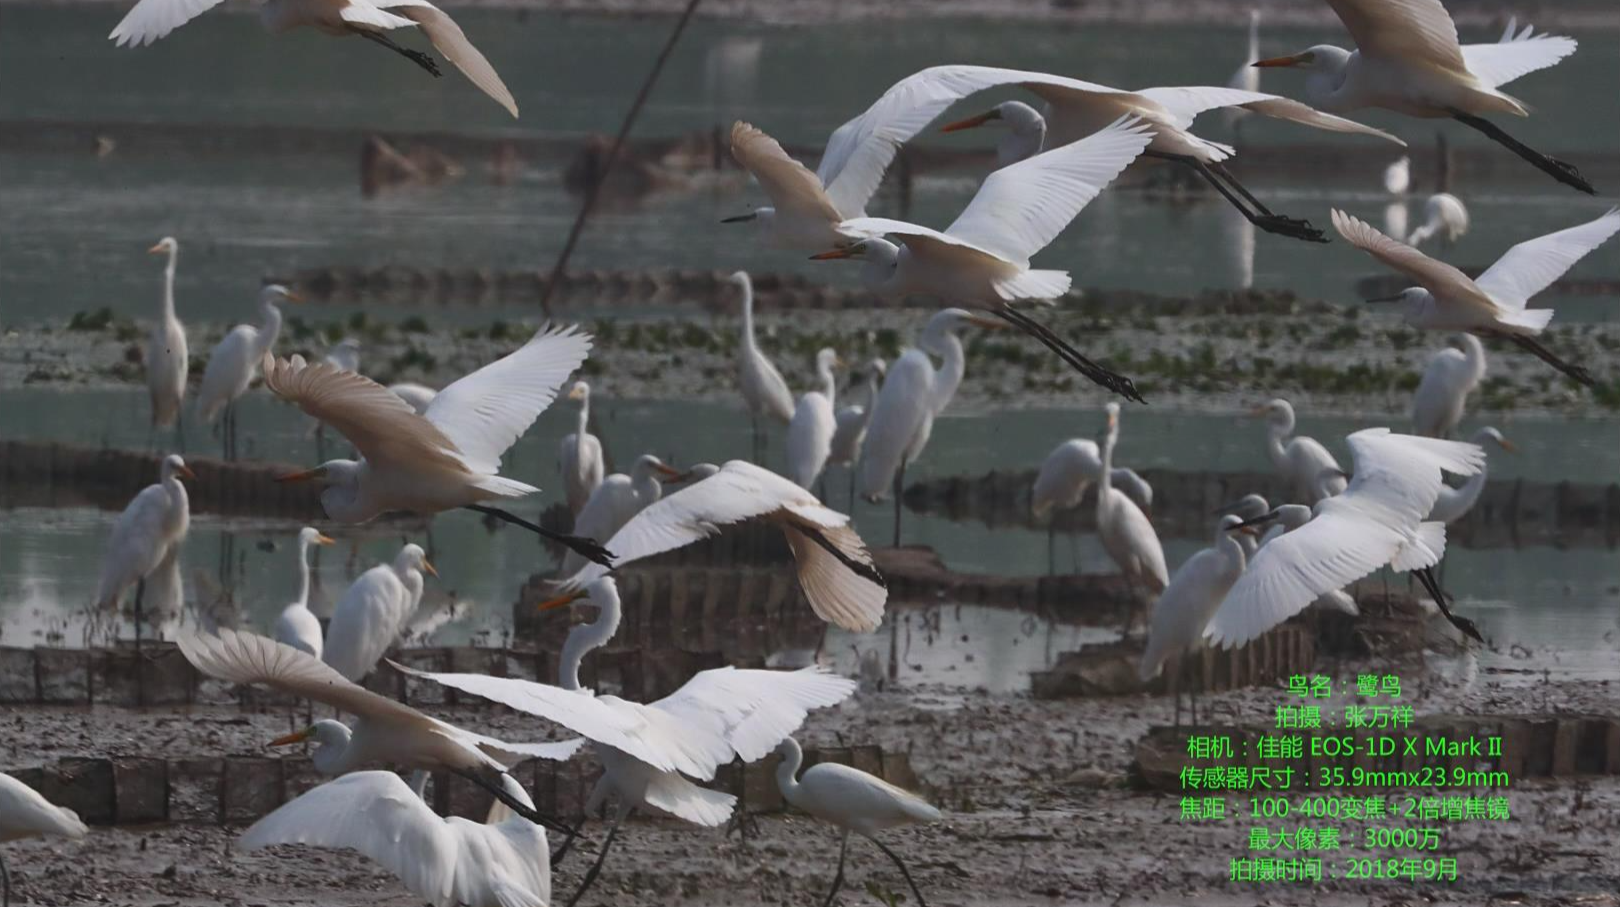 汉寿“鸟人”张万祥用照相机记录西洞庭湖环境变迁